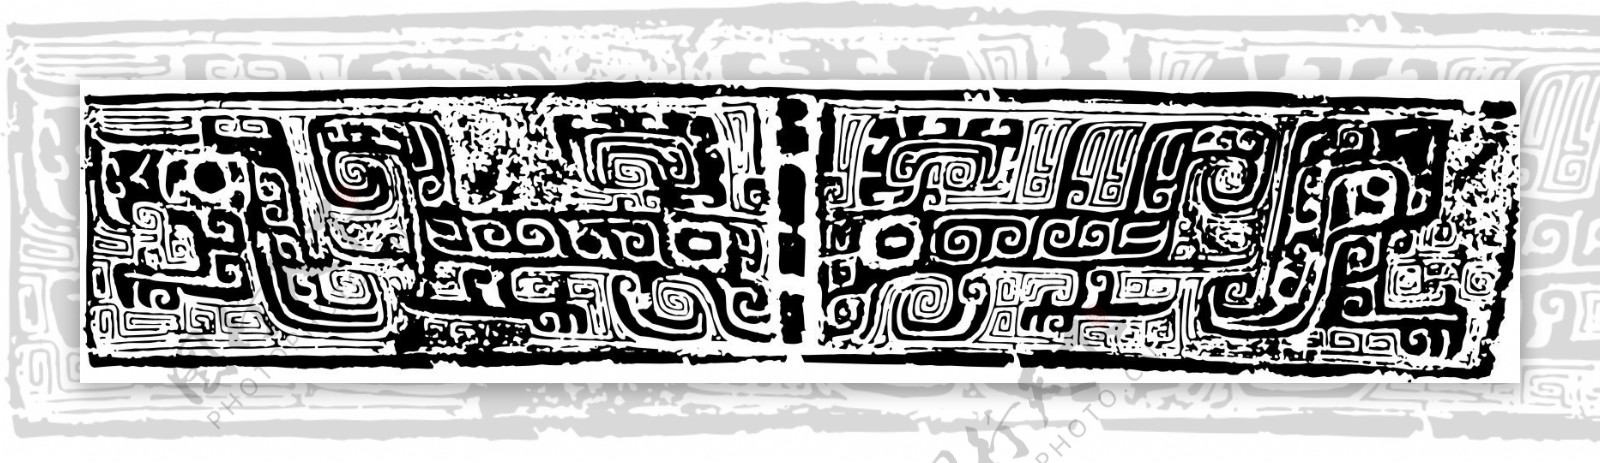 印花矢量图古代雕刻黑白色民族古代印记免费素材